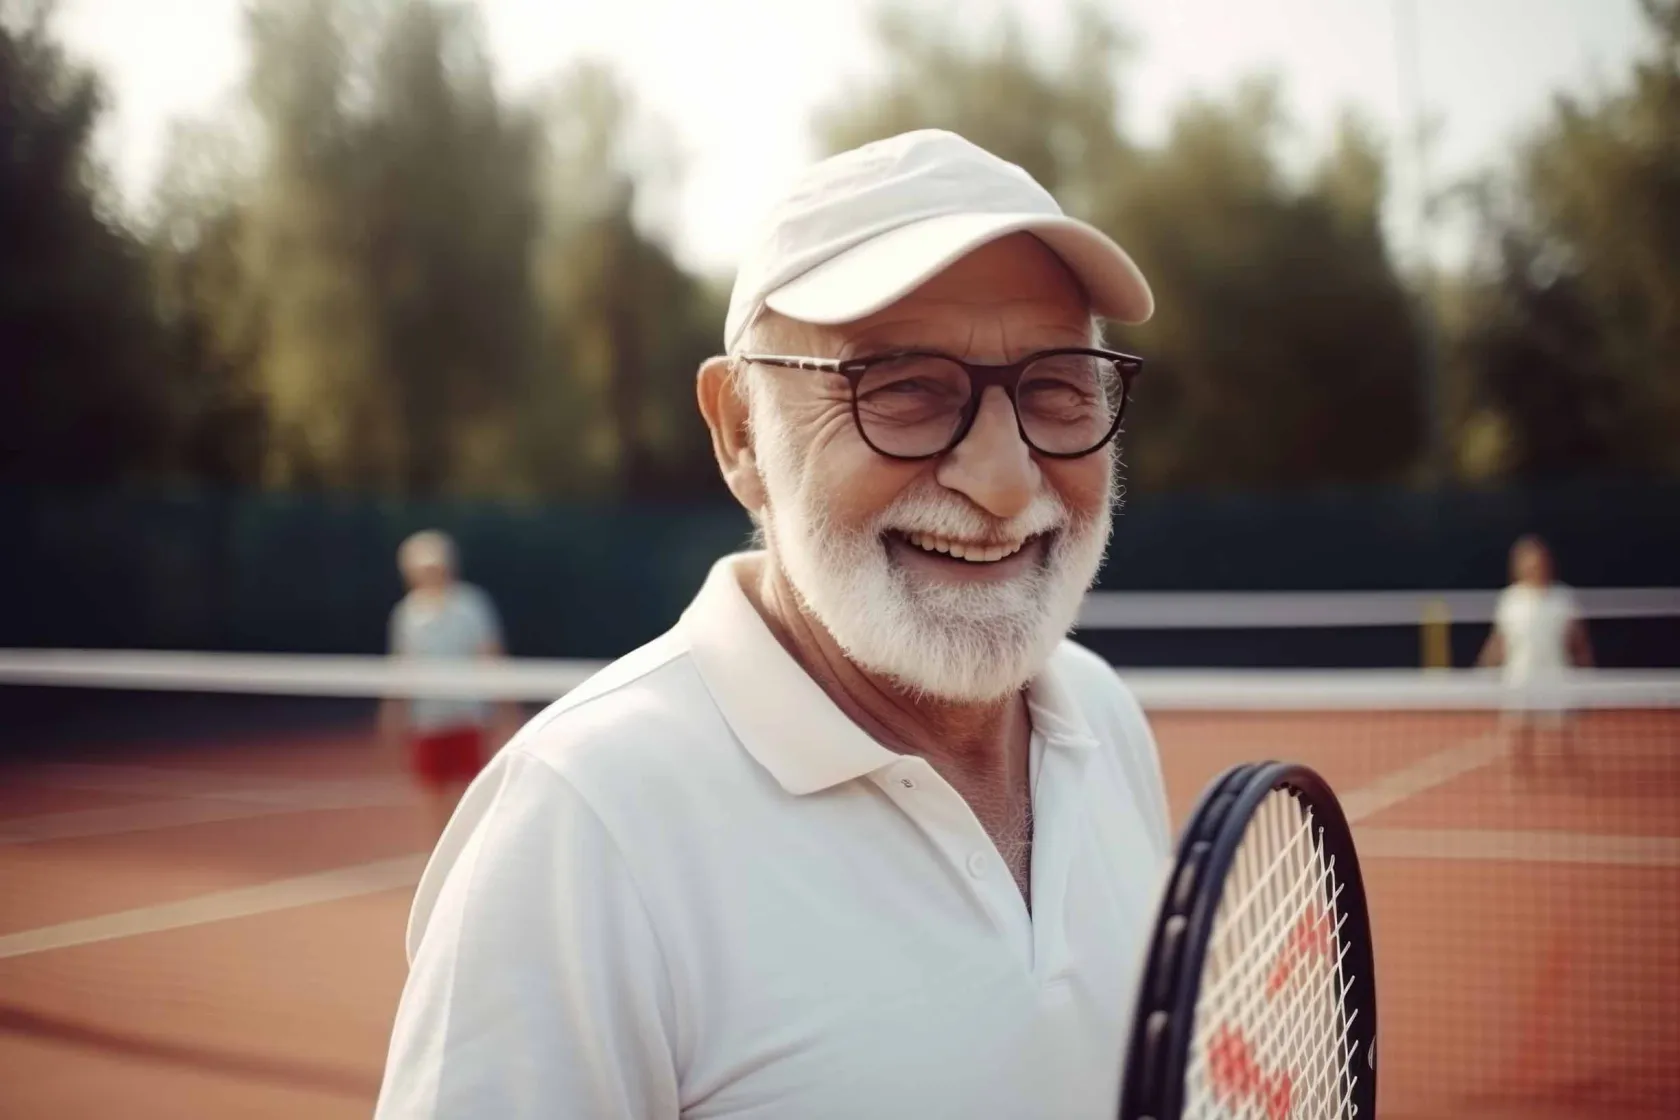 Señor mayor jugando al tenis